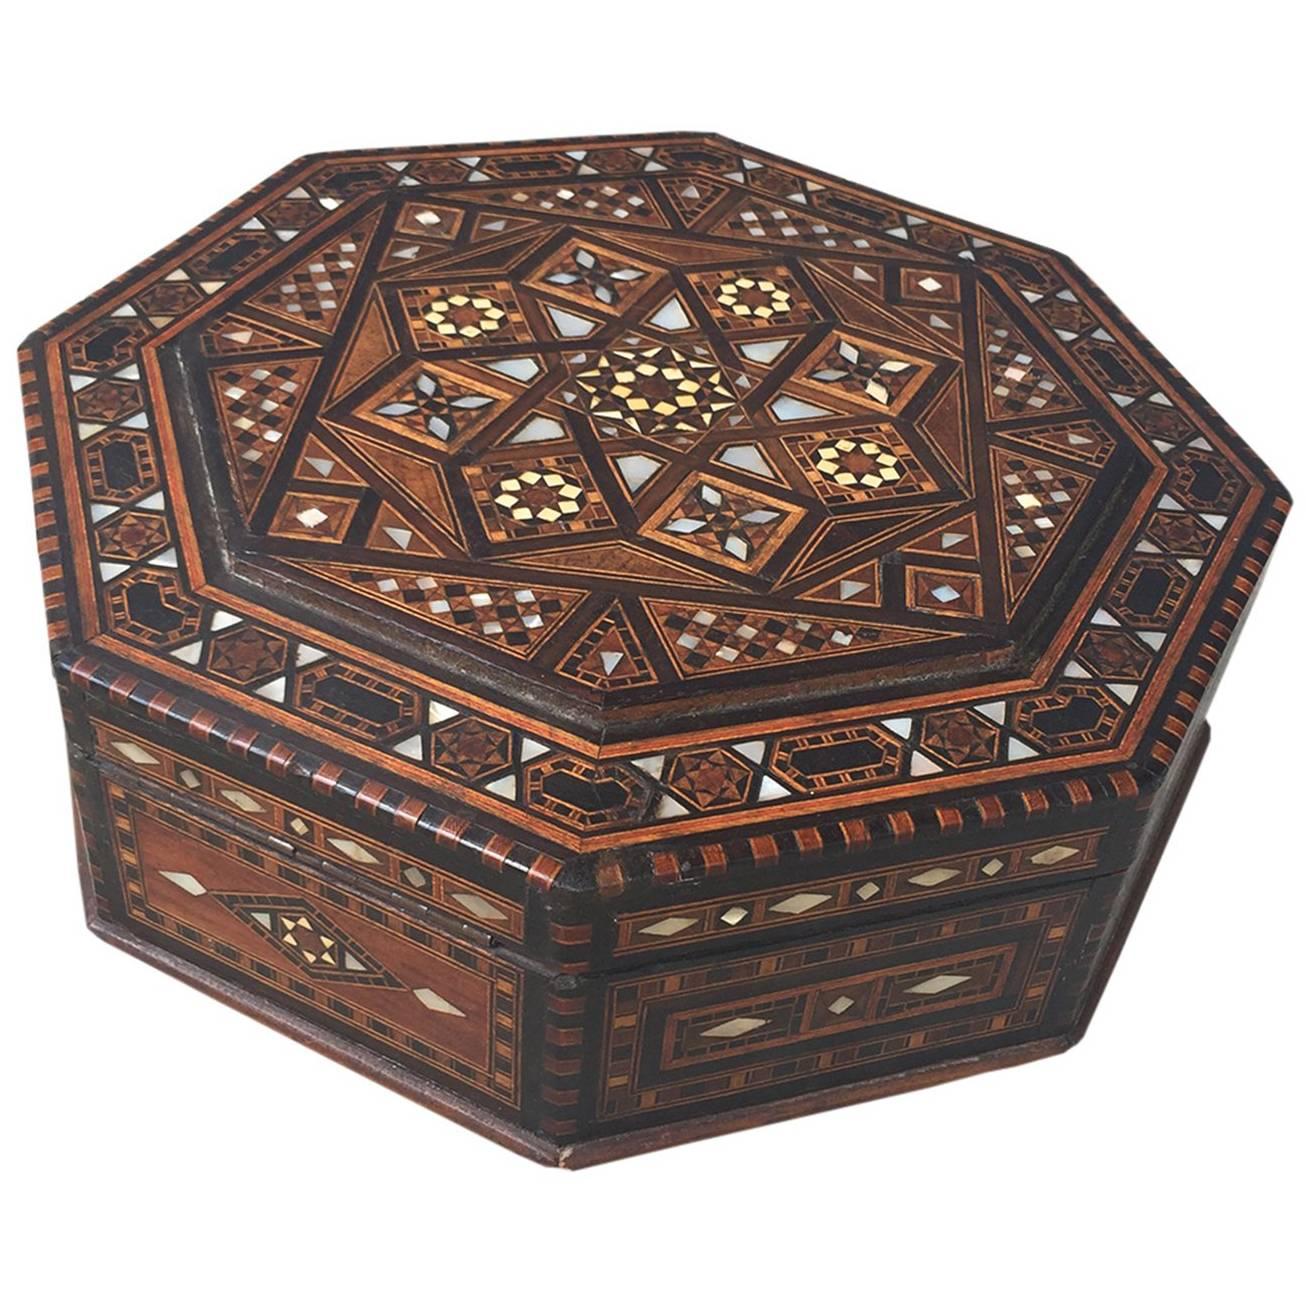 Syrian Octagonal Box, circa 1900